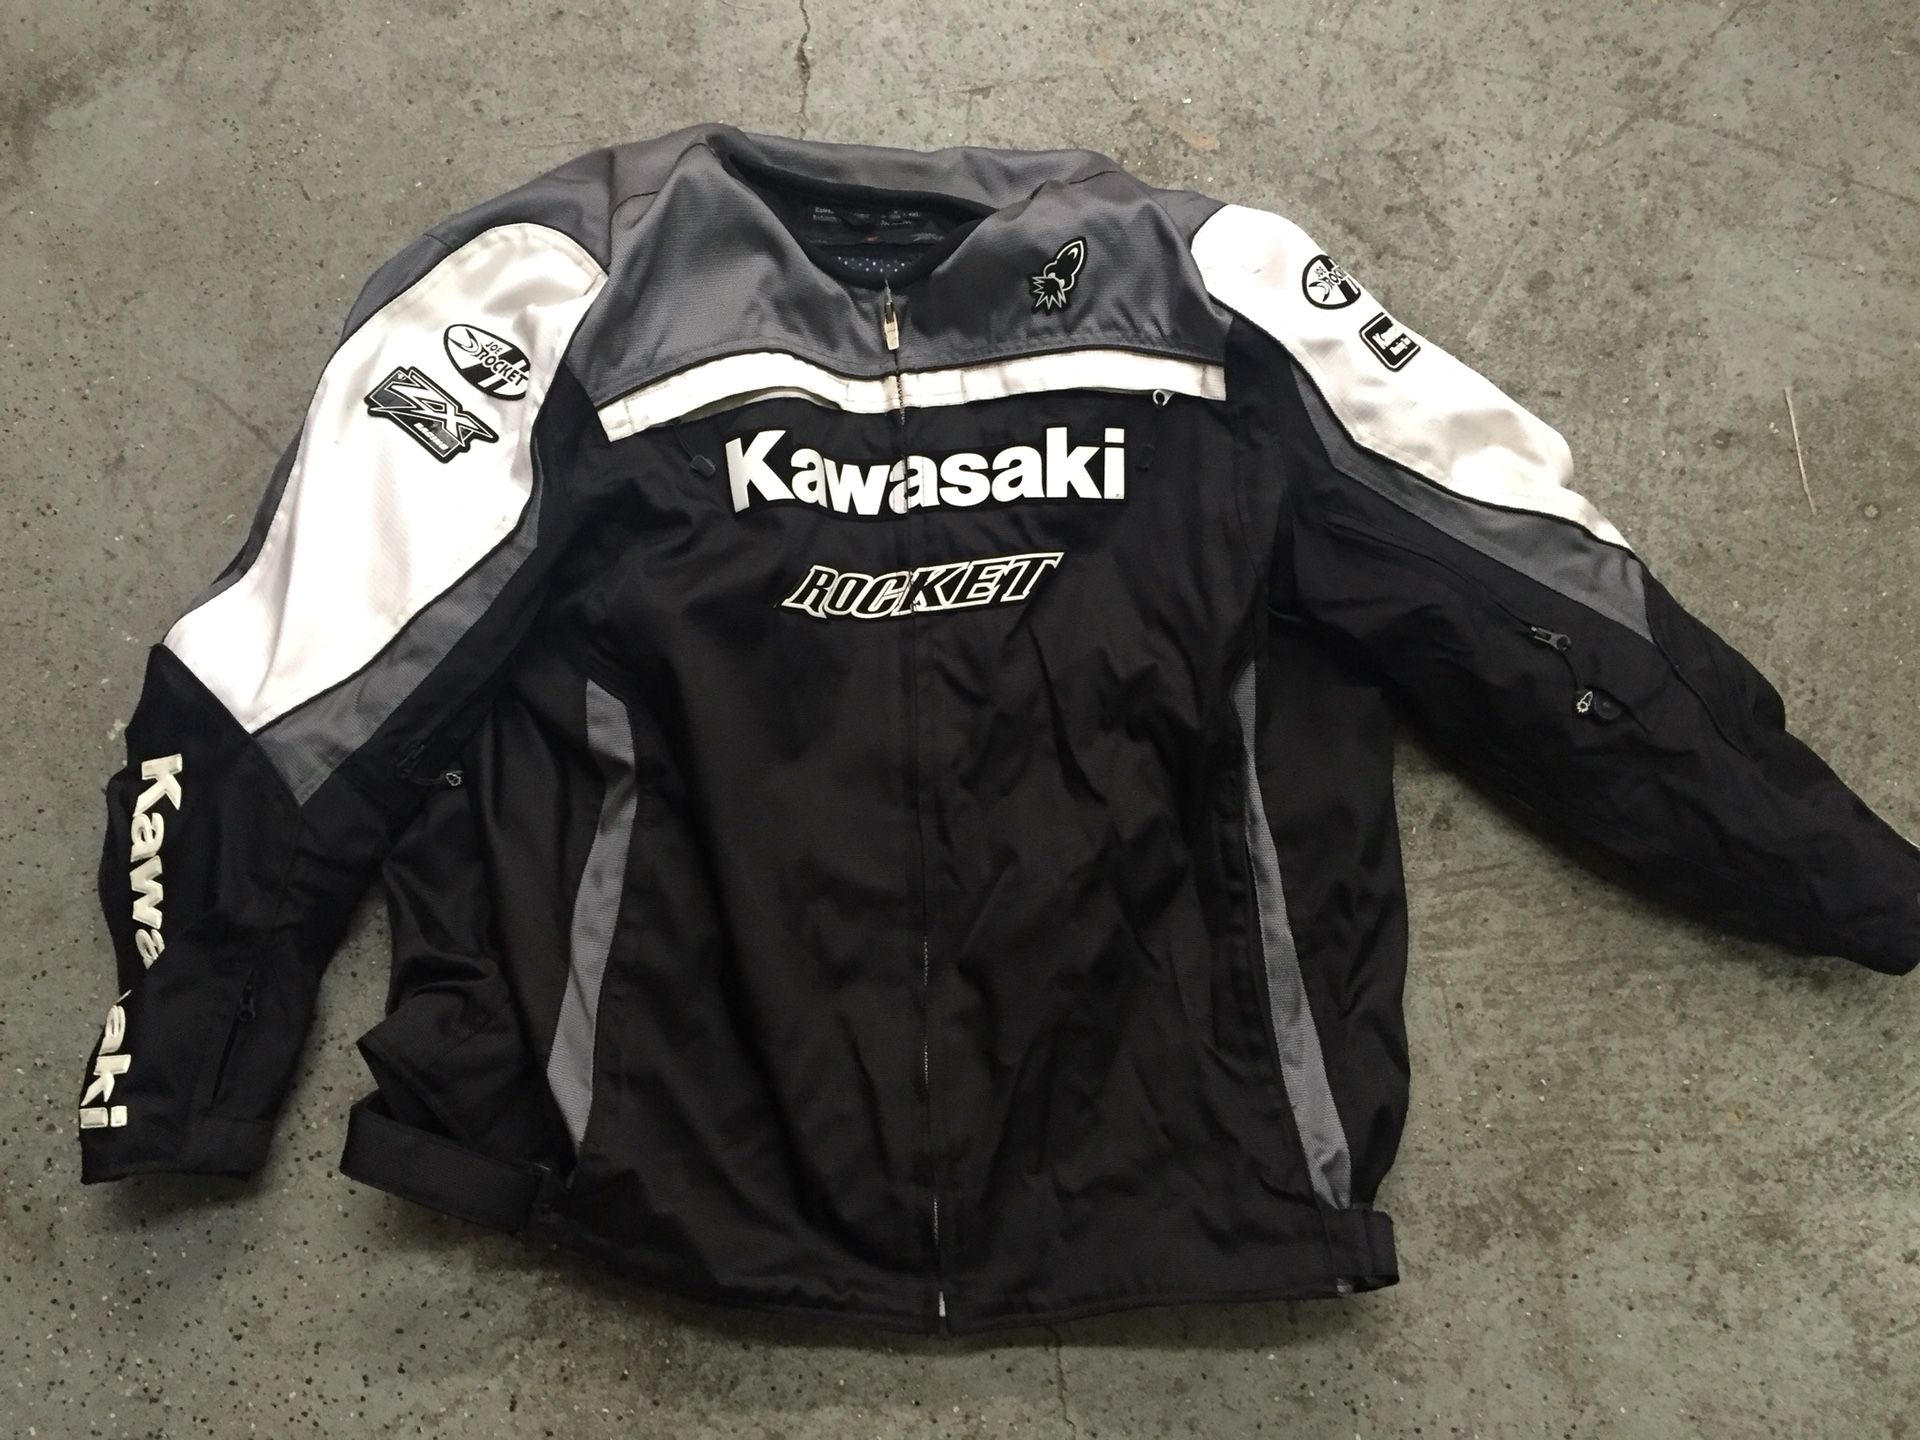 Kawasaki Motorcycle jacket 4xl